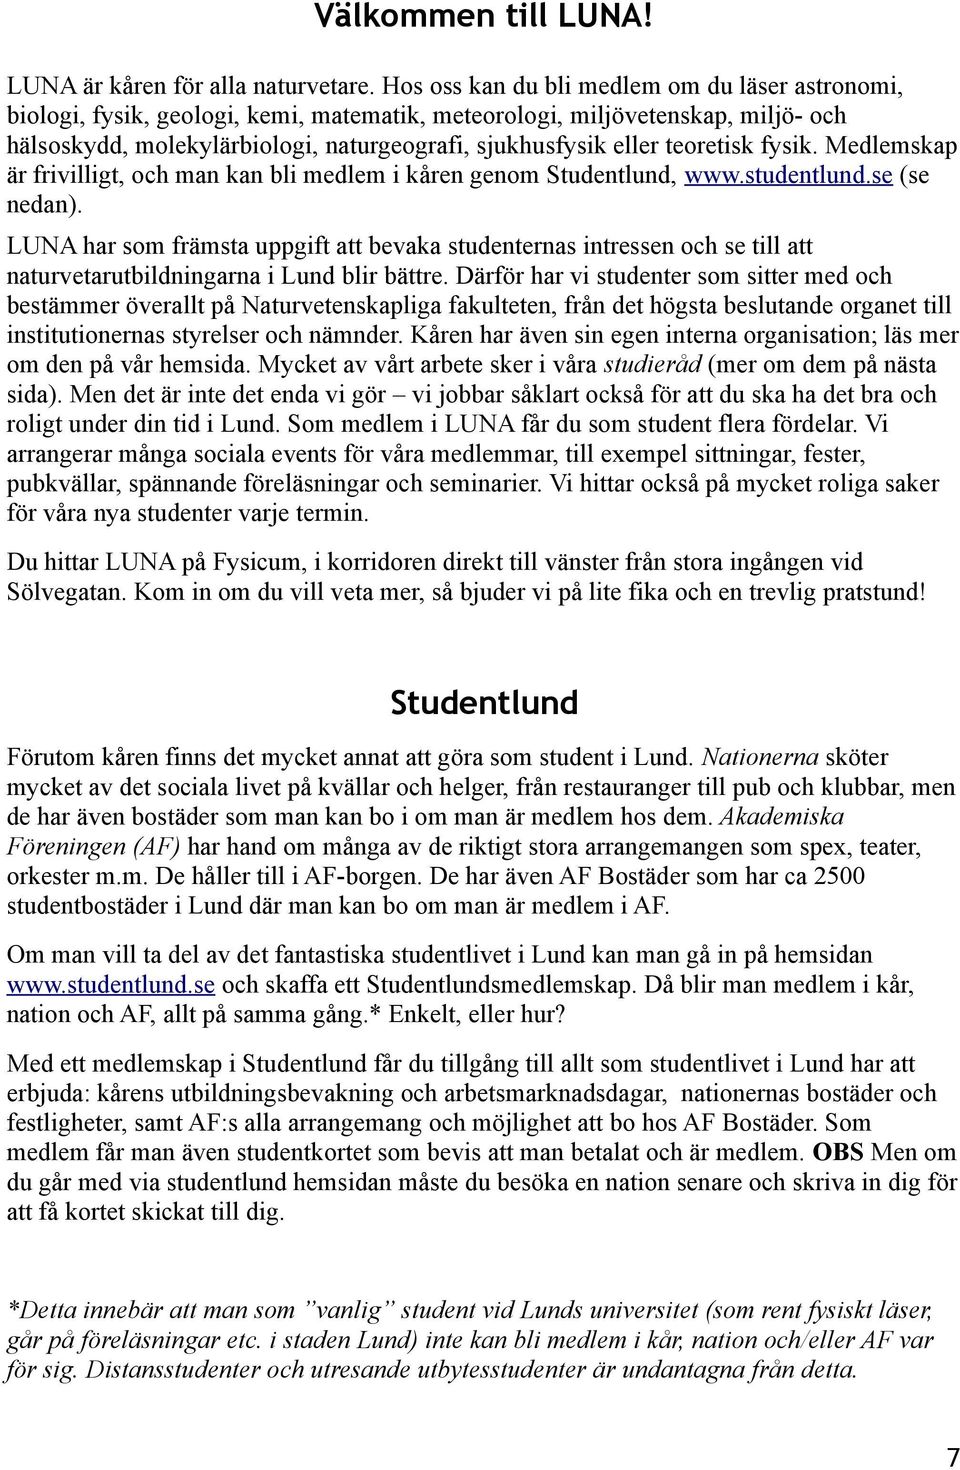 teoretisk fysik. Medlemskap är frivilligt, och man kan bli medlem i kåren genom Studentlund, www.studentlund.se (se nedan).